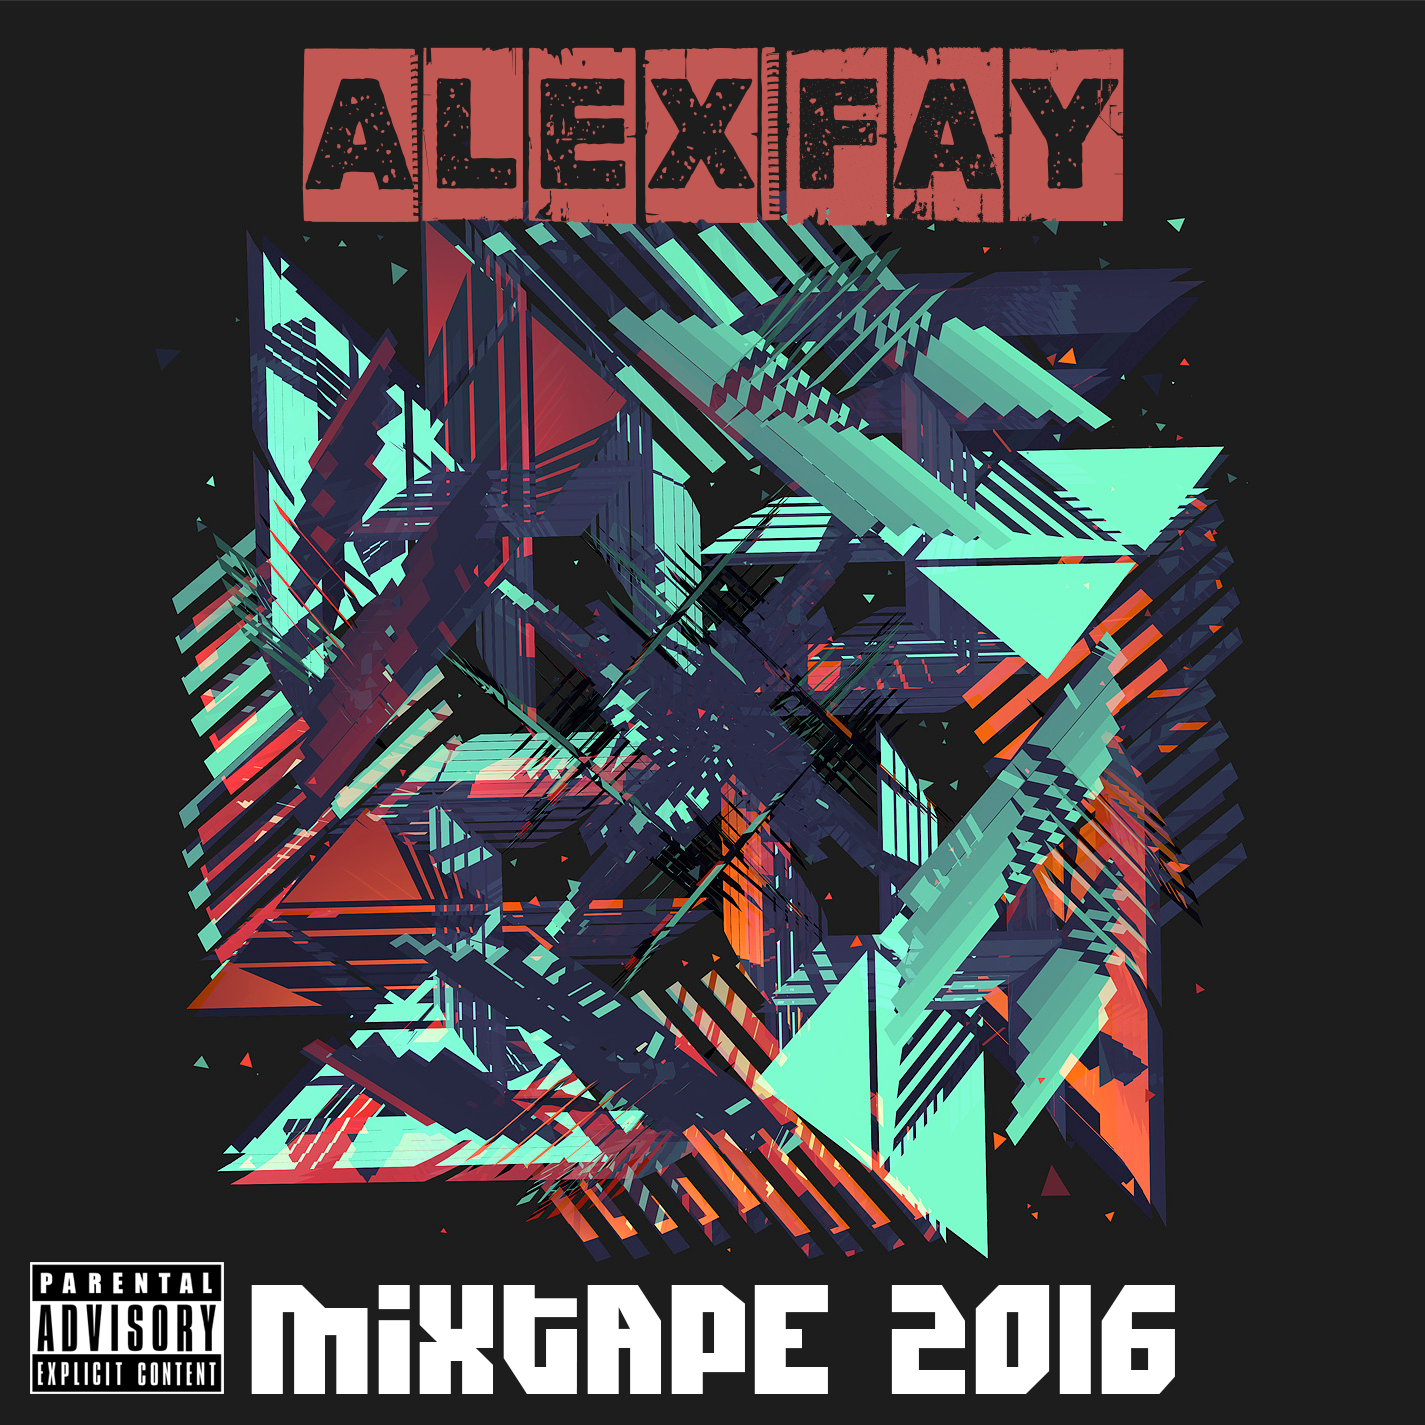 Mixtape 2016